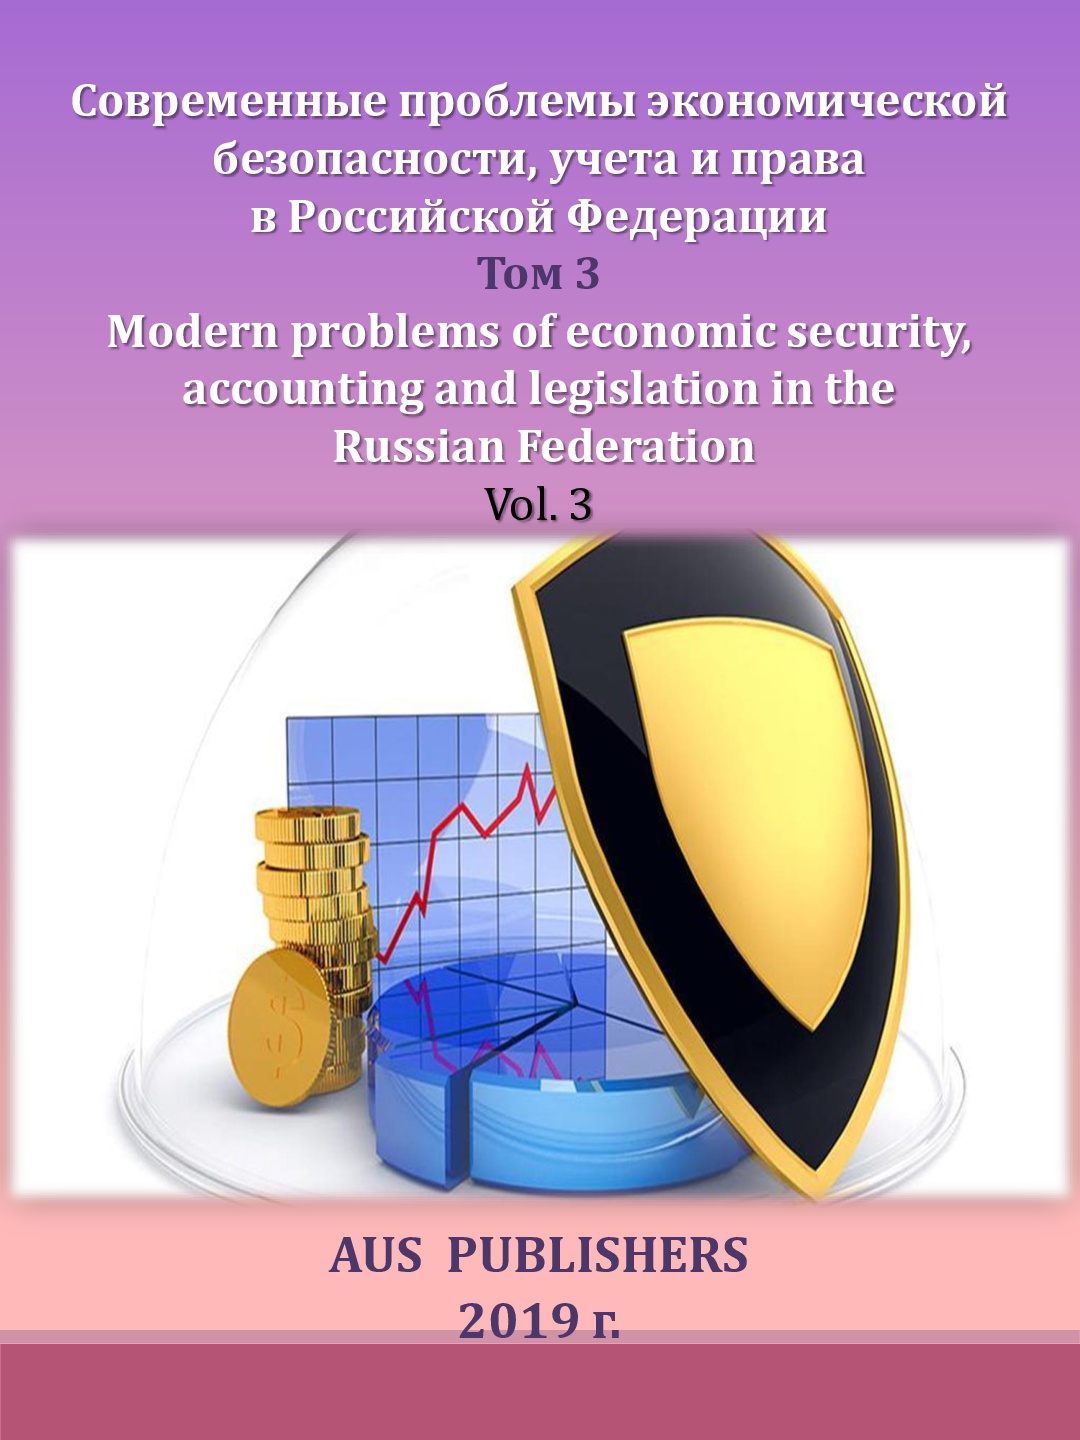             Развитие информационных технологий в структуре налоговых органов Российской Федерации
    